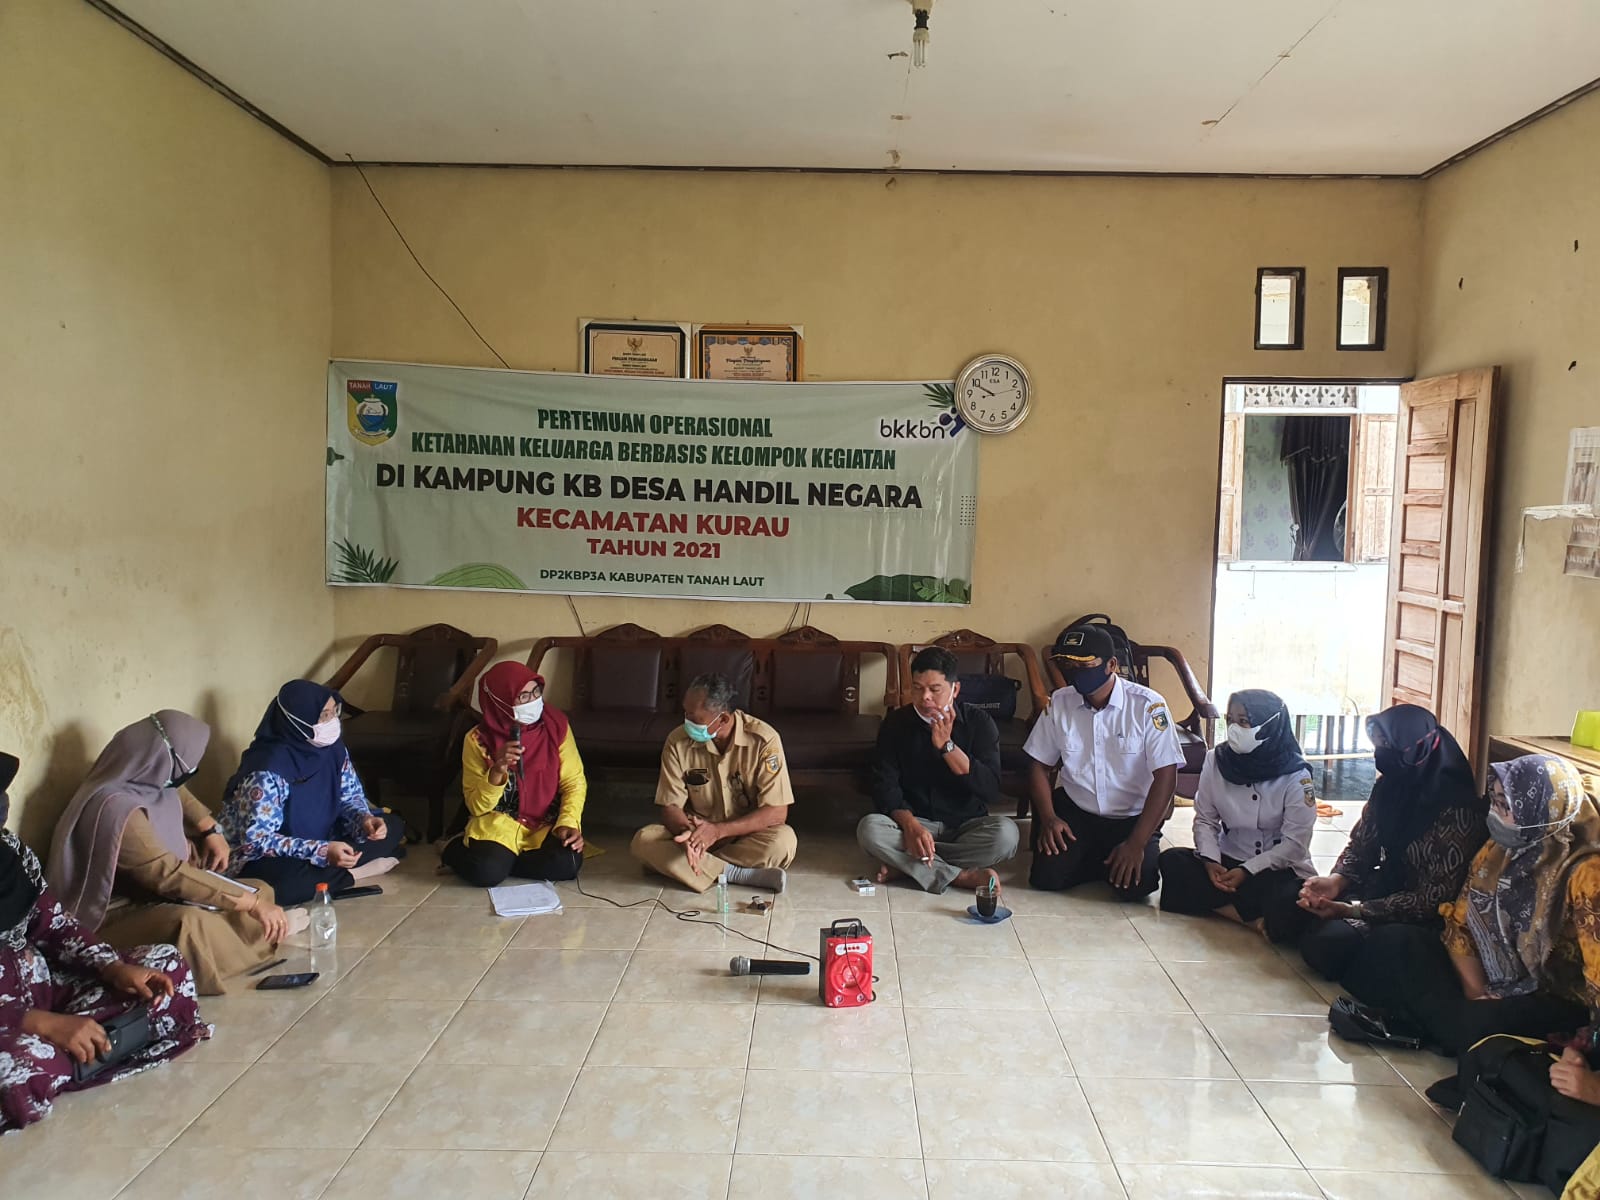 Pertemuan Pokja di Kampung KB Desa Handil Negara Kecamatan Kurau.